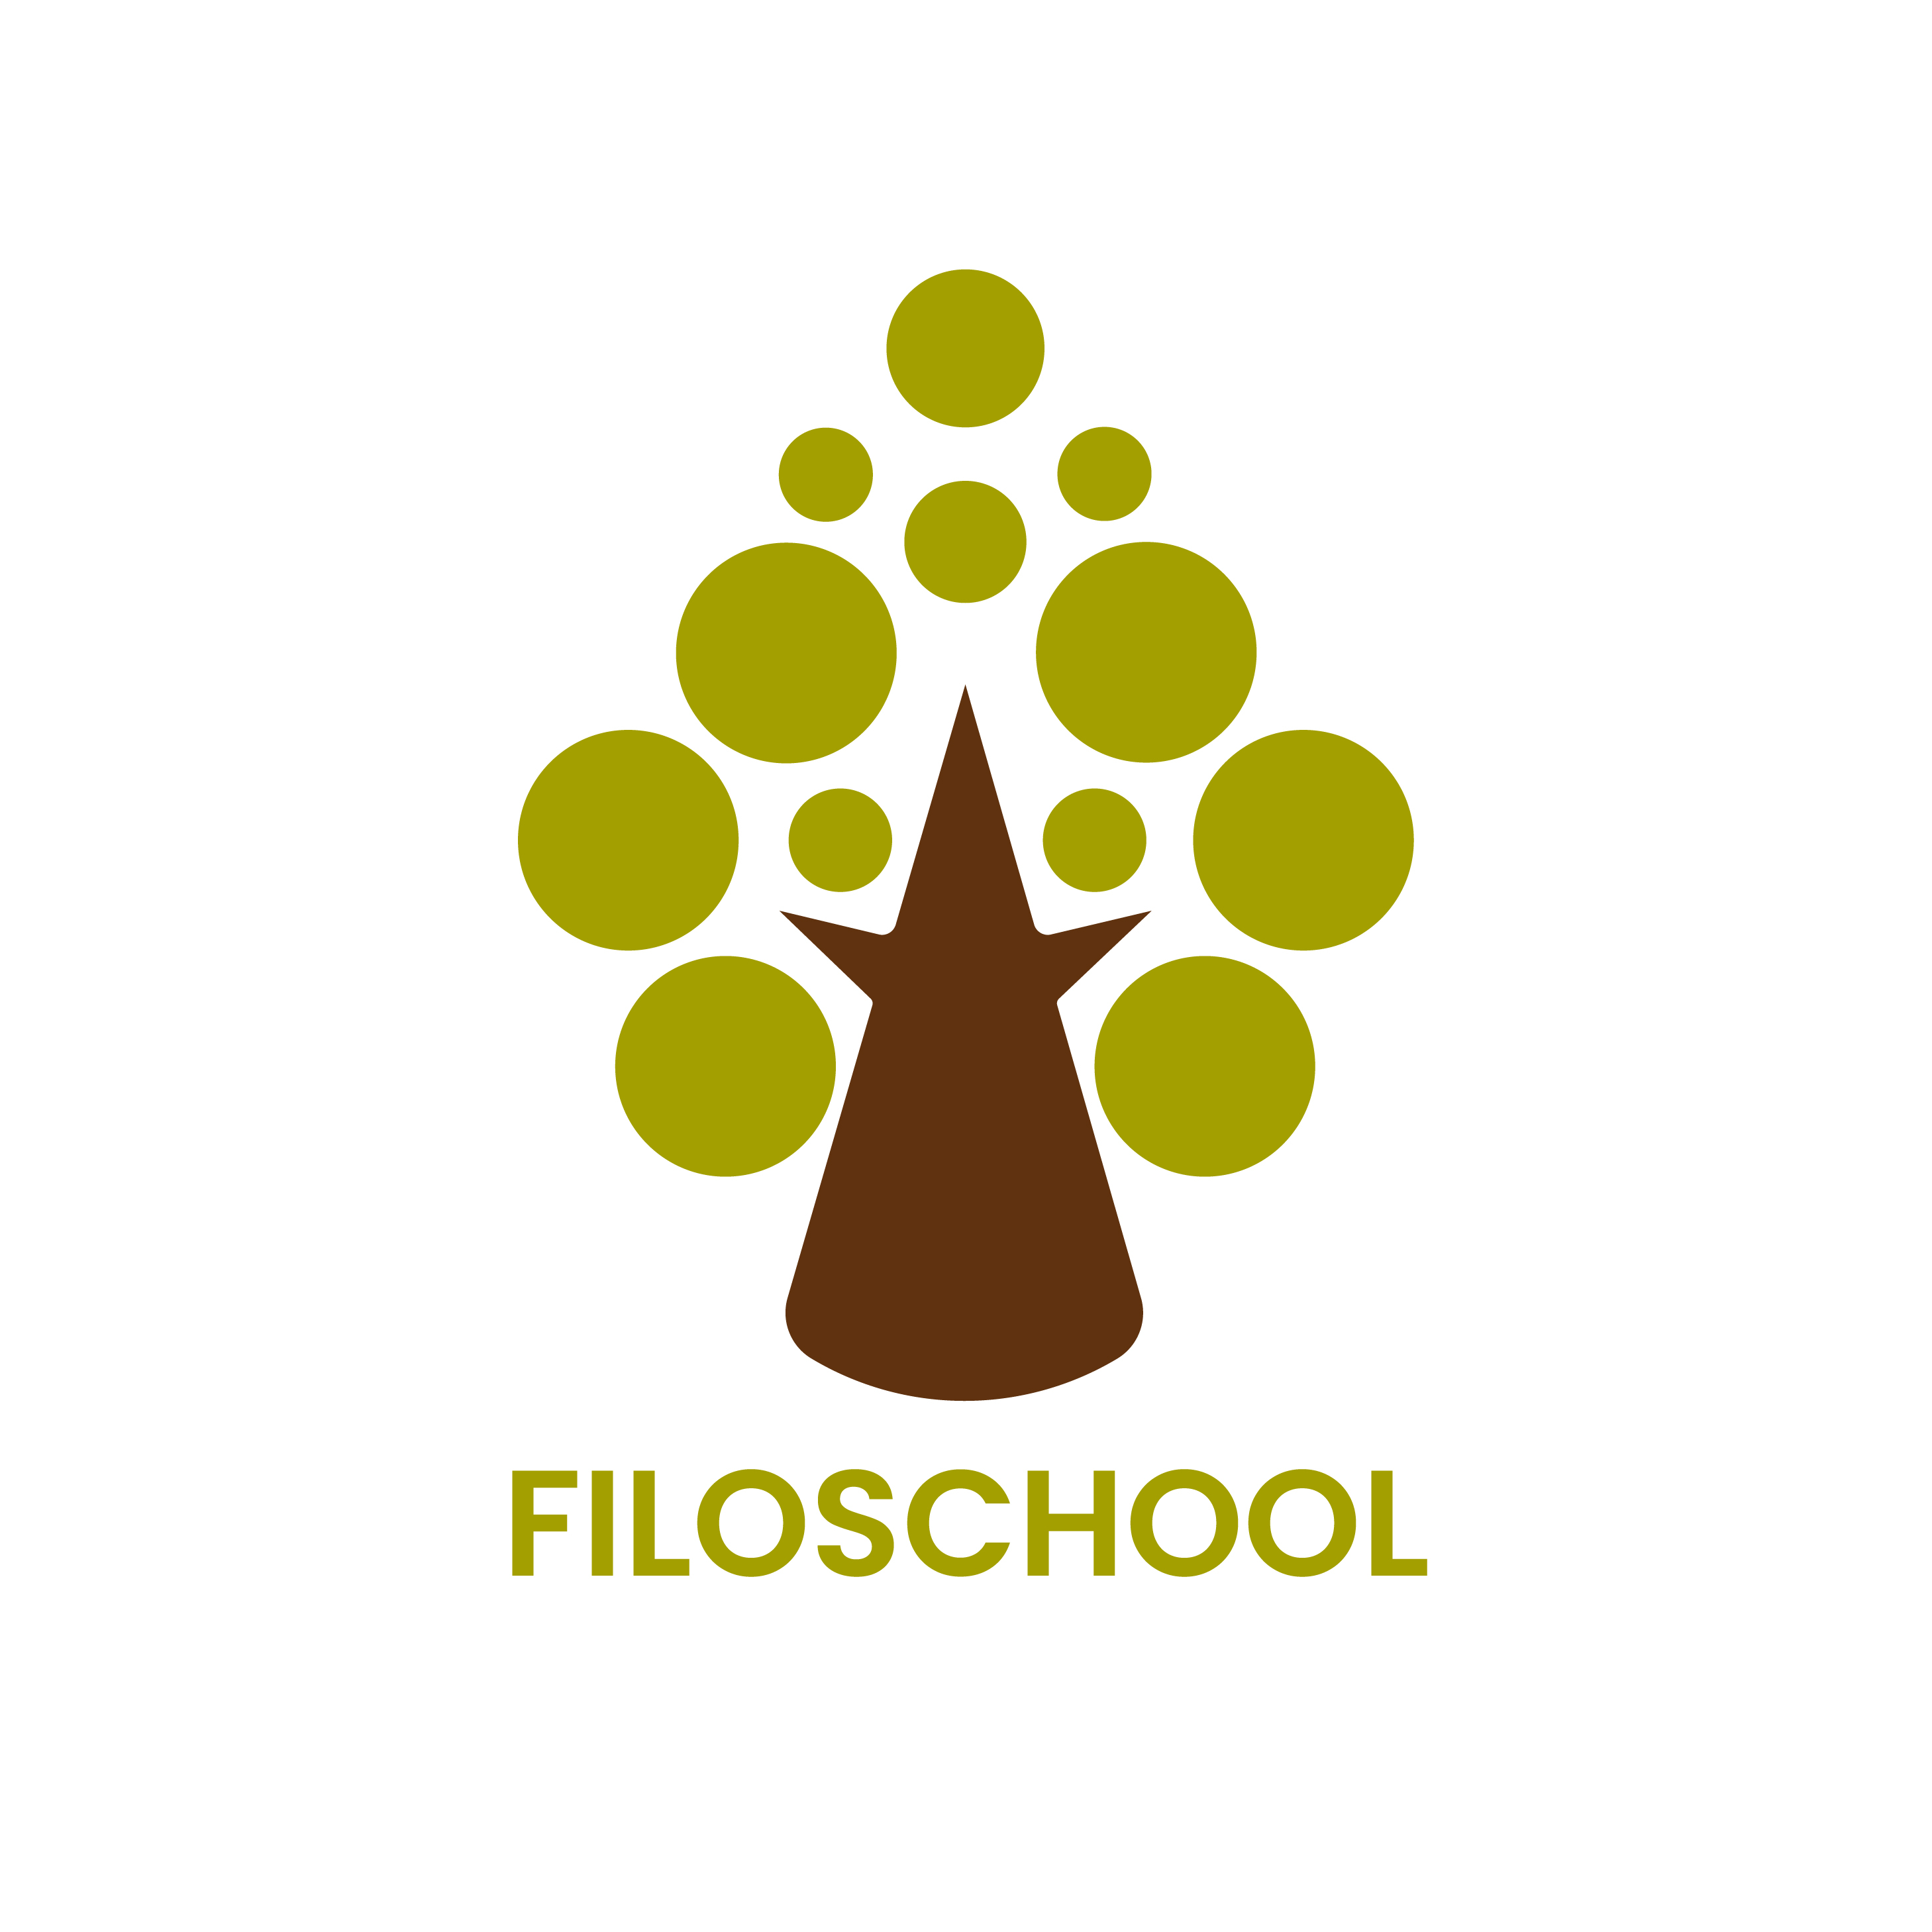 FiloSchool